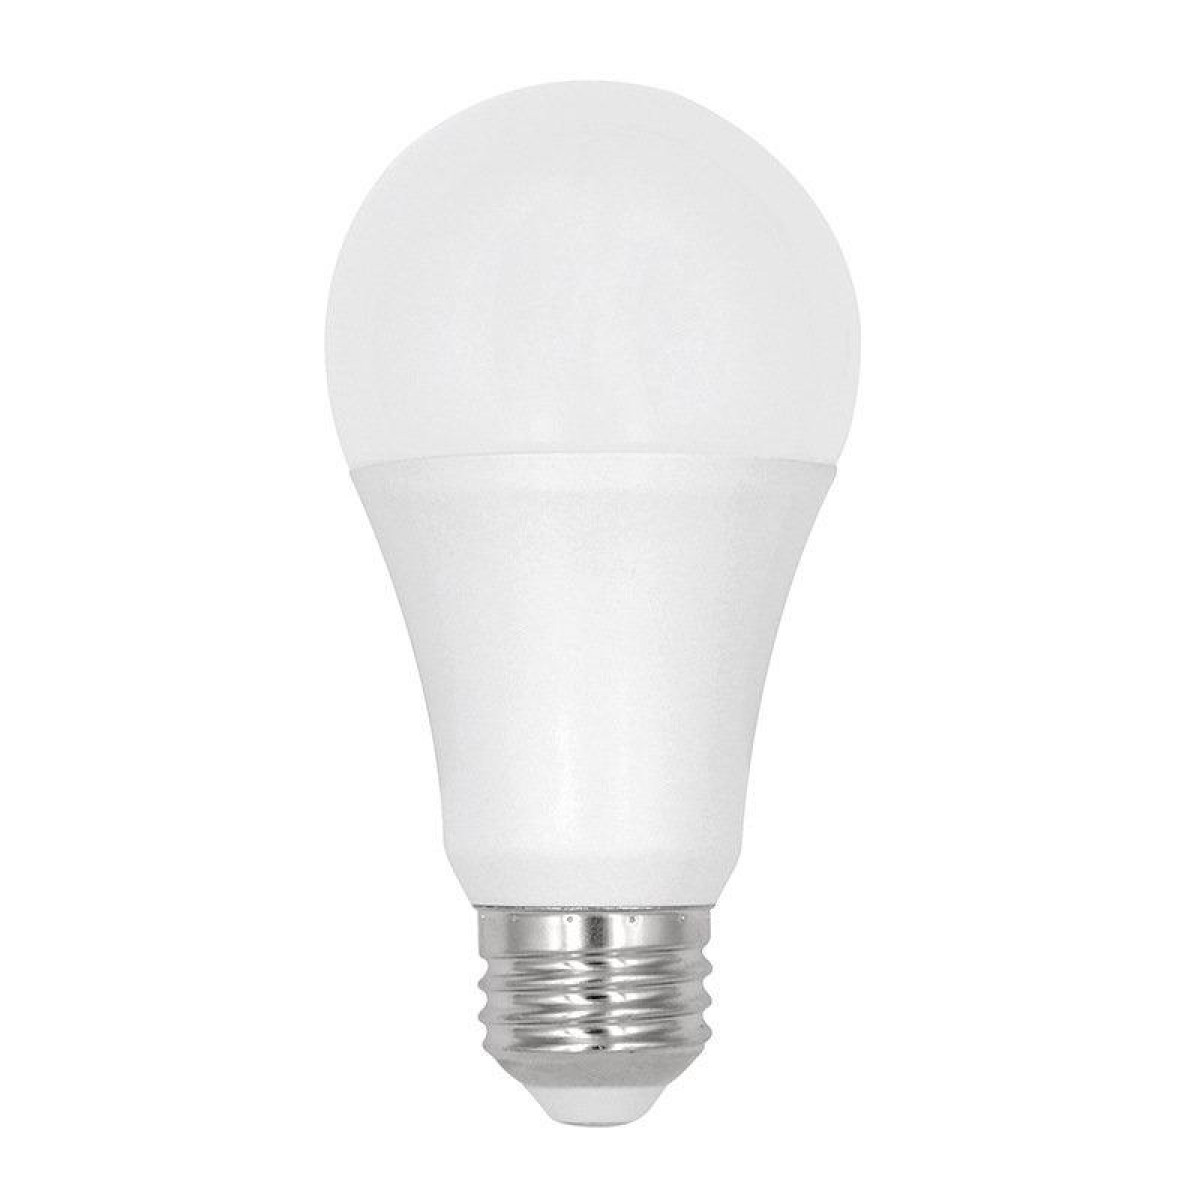 INF WLAN WLAN-LED-Glühlampen Weiß Glühlampe Smart Dimmer LED RGB E27-test und 7.5W Multicolor